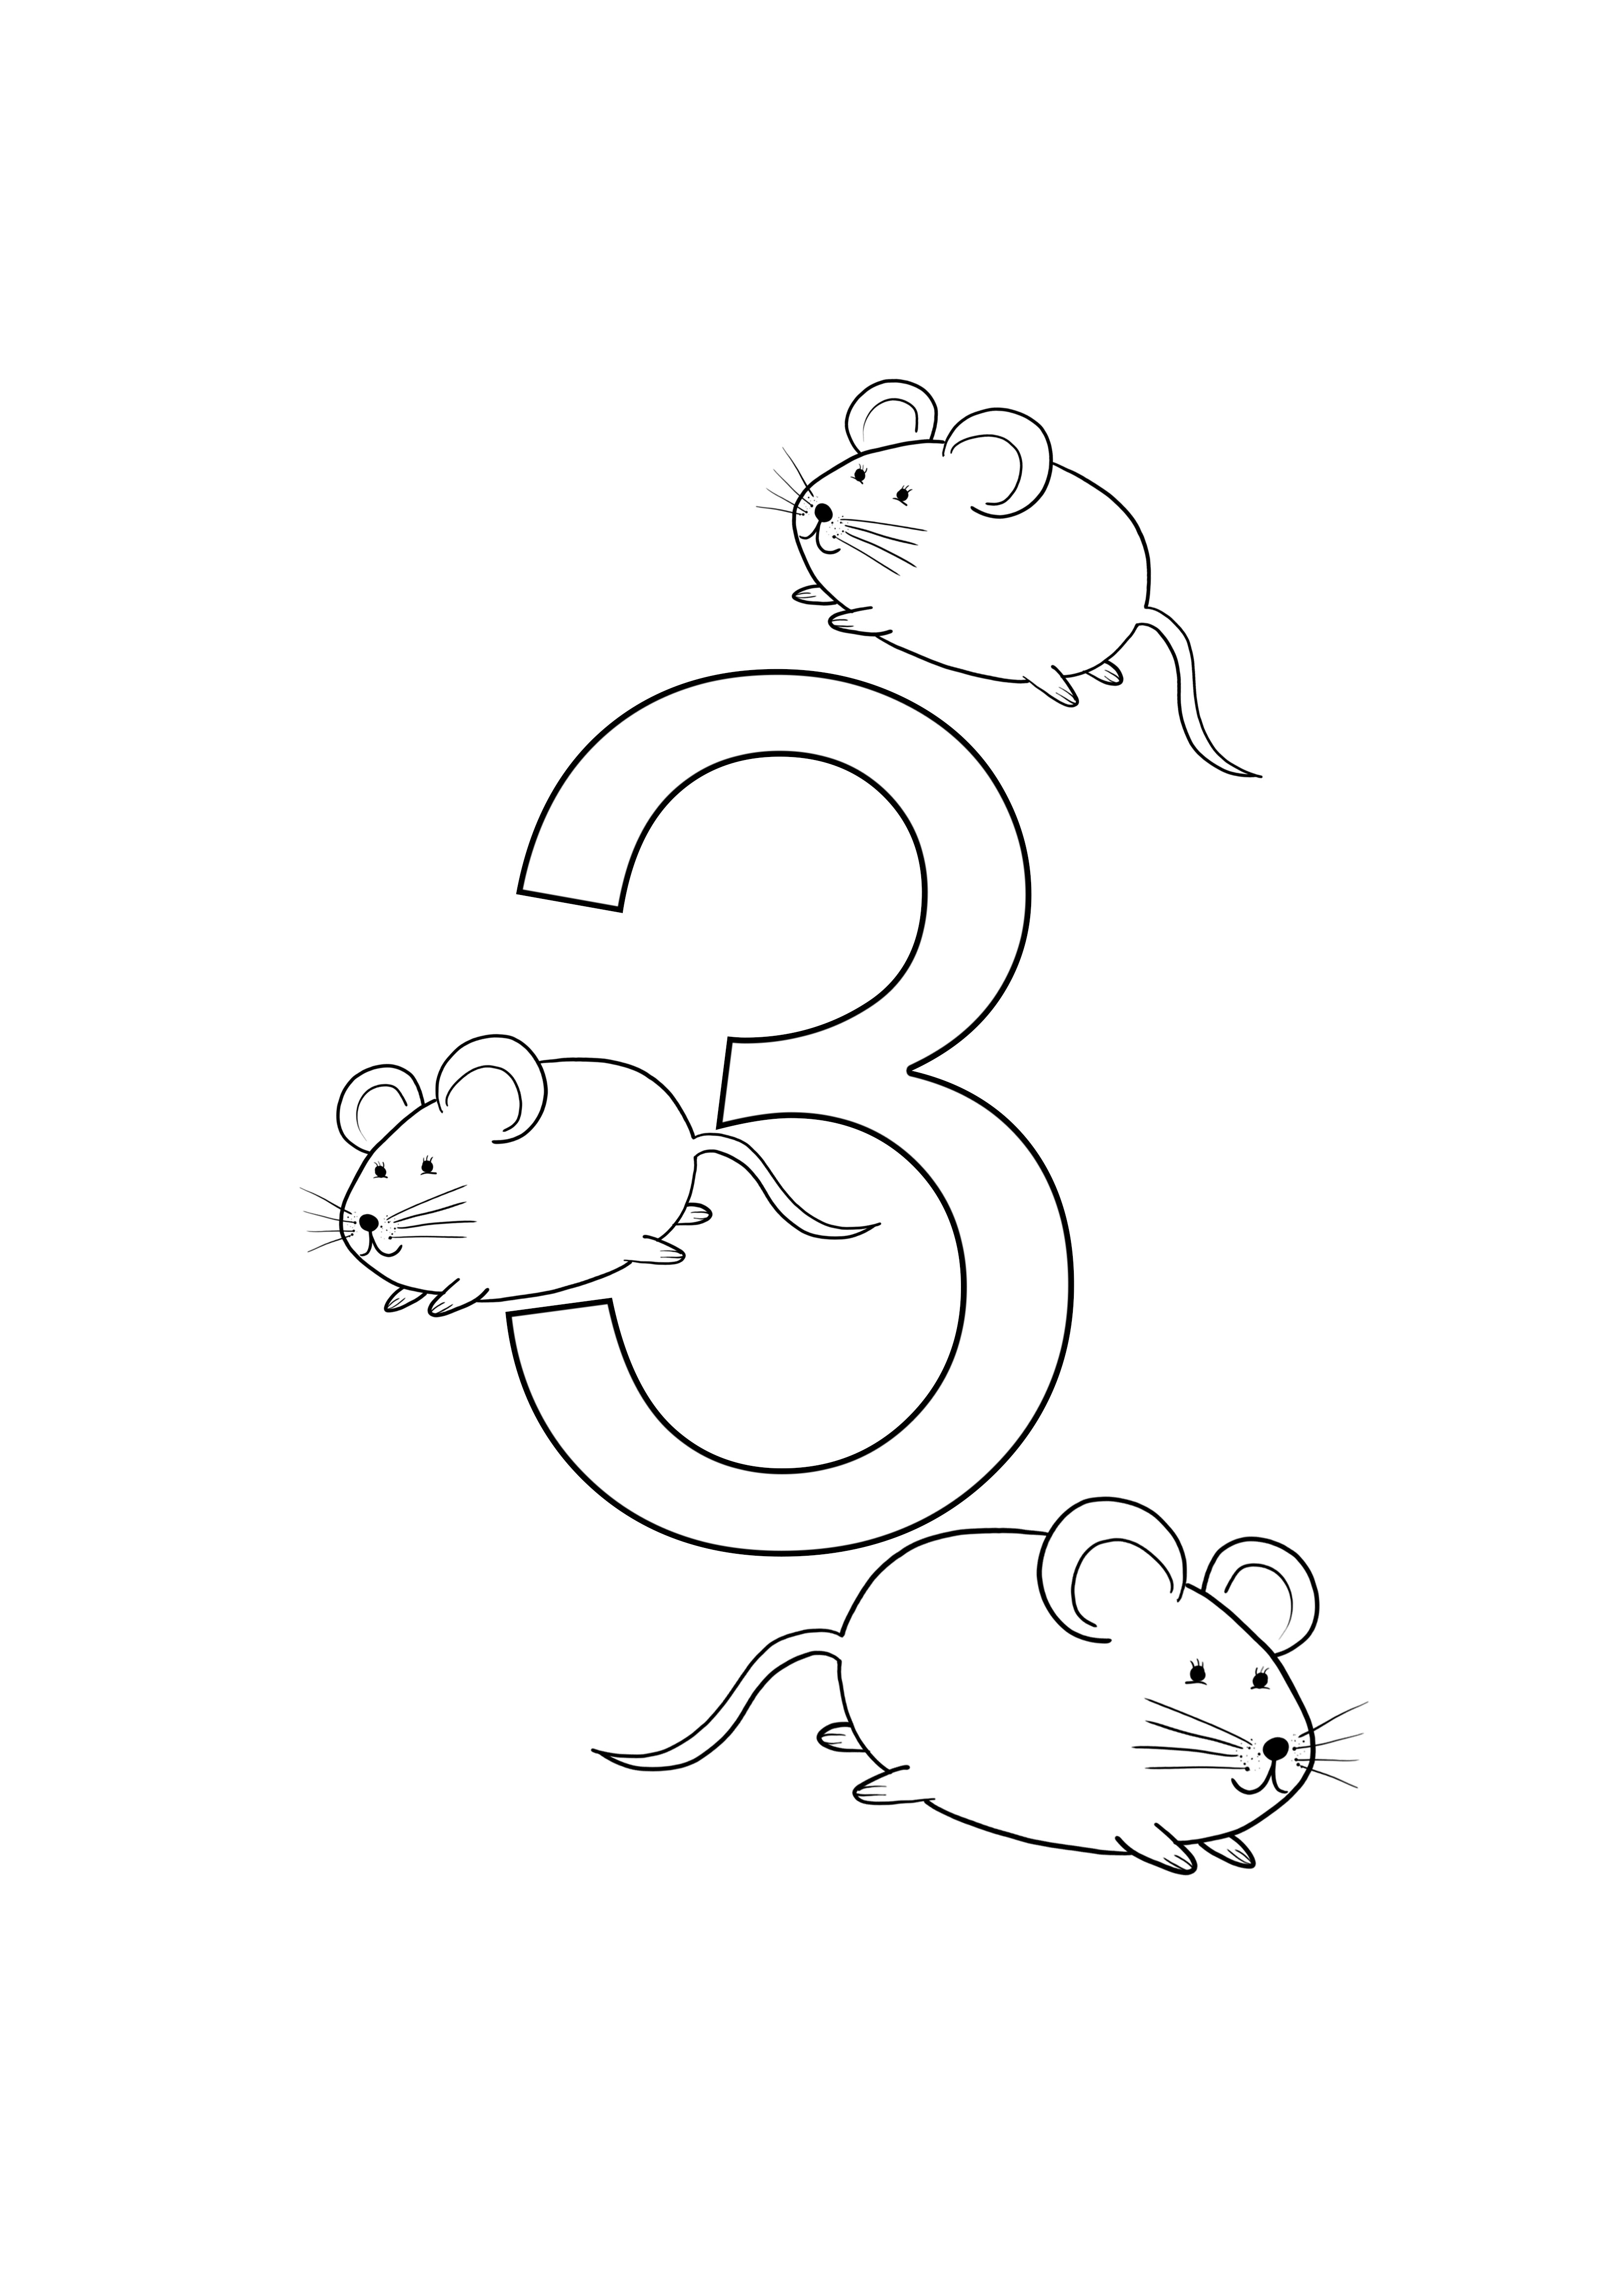 drie muizen kleurnummer en print gratis kleurplaat